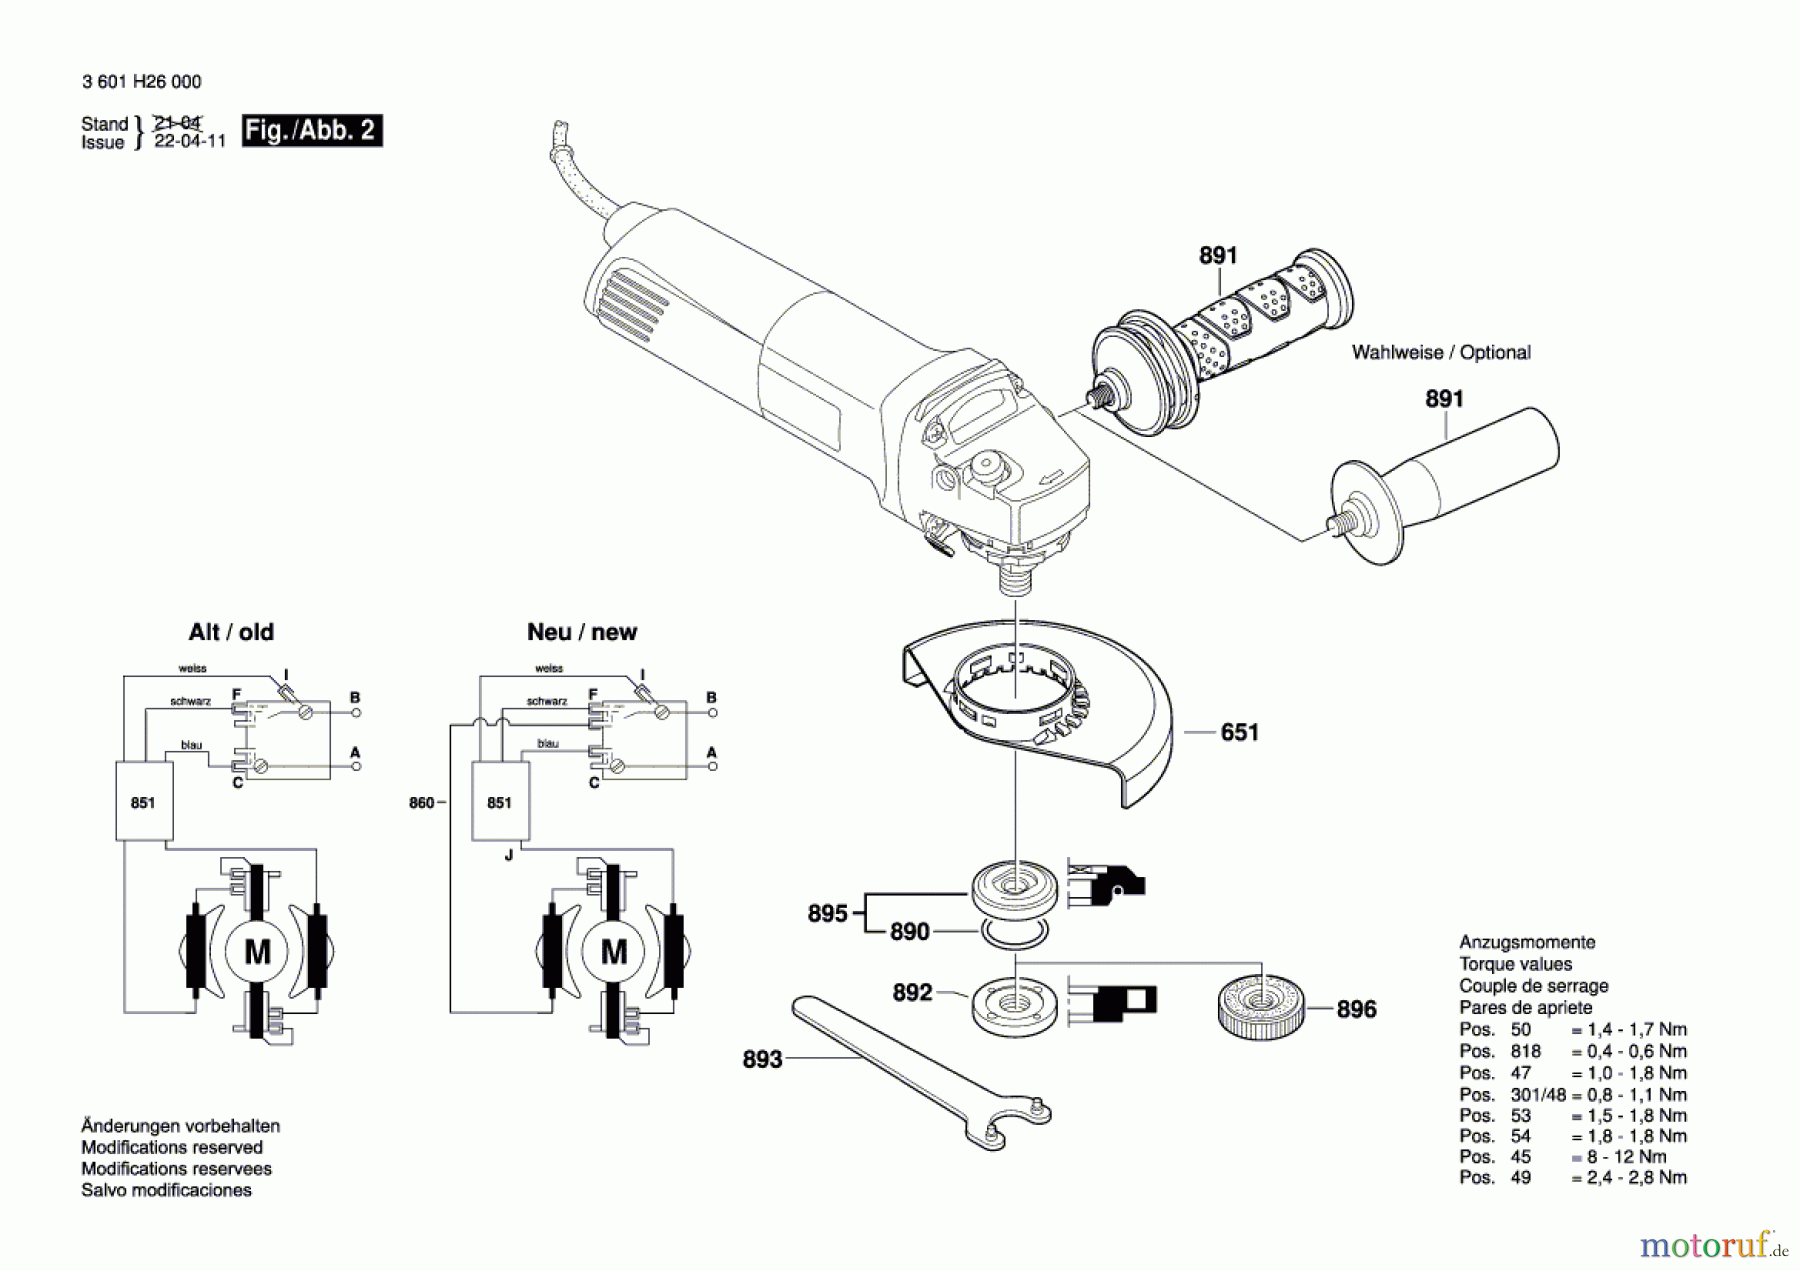  Bosch Werkzeug Winkelschleifer GWS 14-150 CI Seite 2